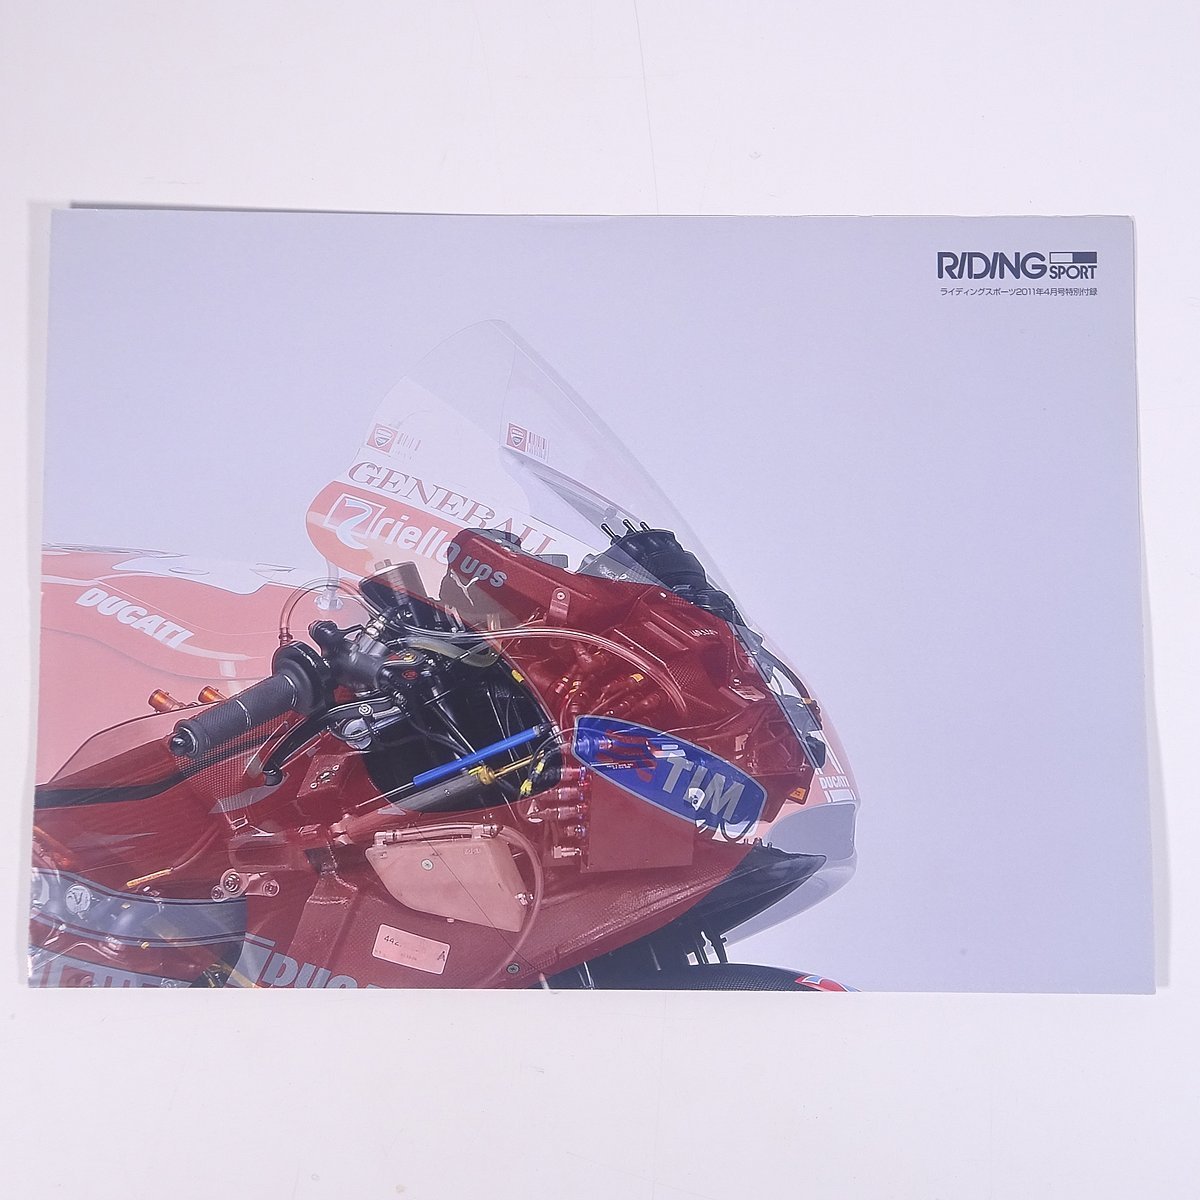 【ポスター1枚】 2010 ドゥカティ・デスモセディチ GP10 サイズ・42cm×59cm 雑誌付録(ライディングスポーツ) バイク オートバイの画像8